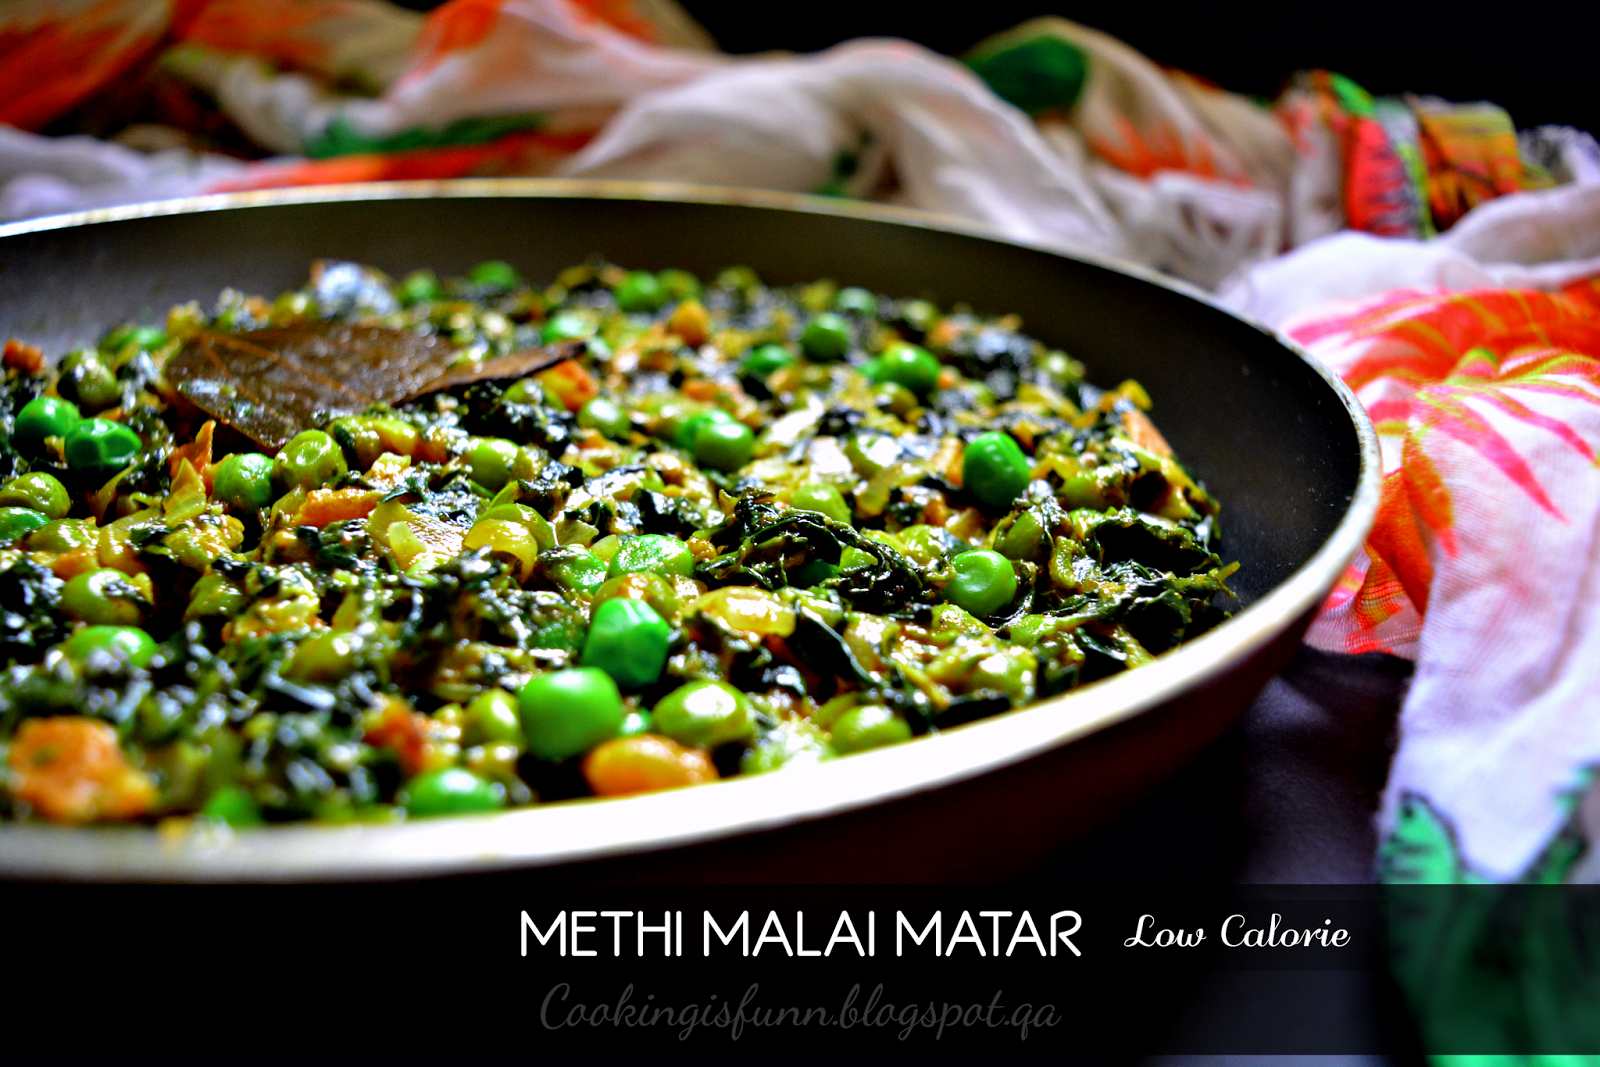 सुखी मेथी मलाई मटर रेसिपी - Dry Methi Malai Matar (Recipe In Hindi)